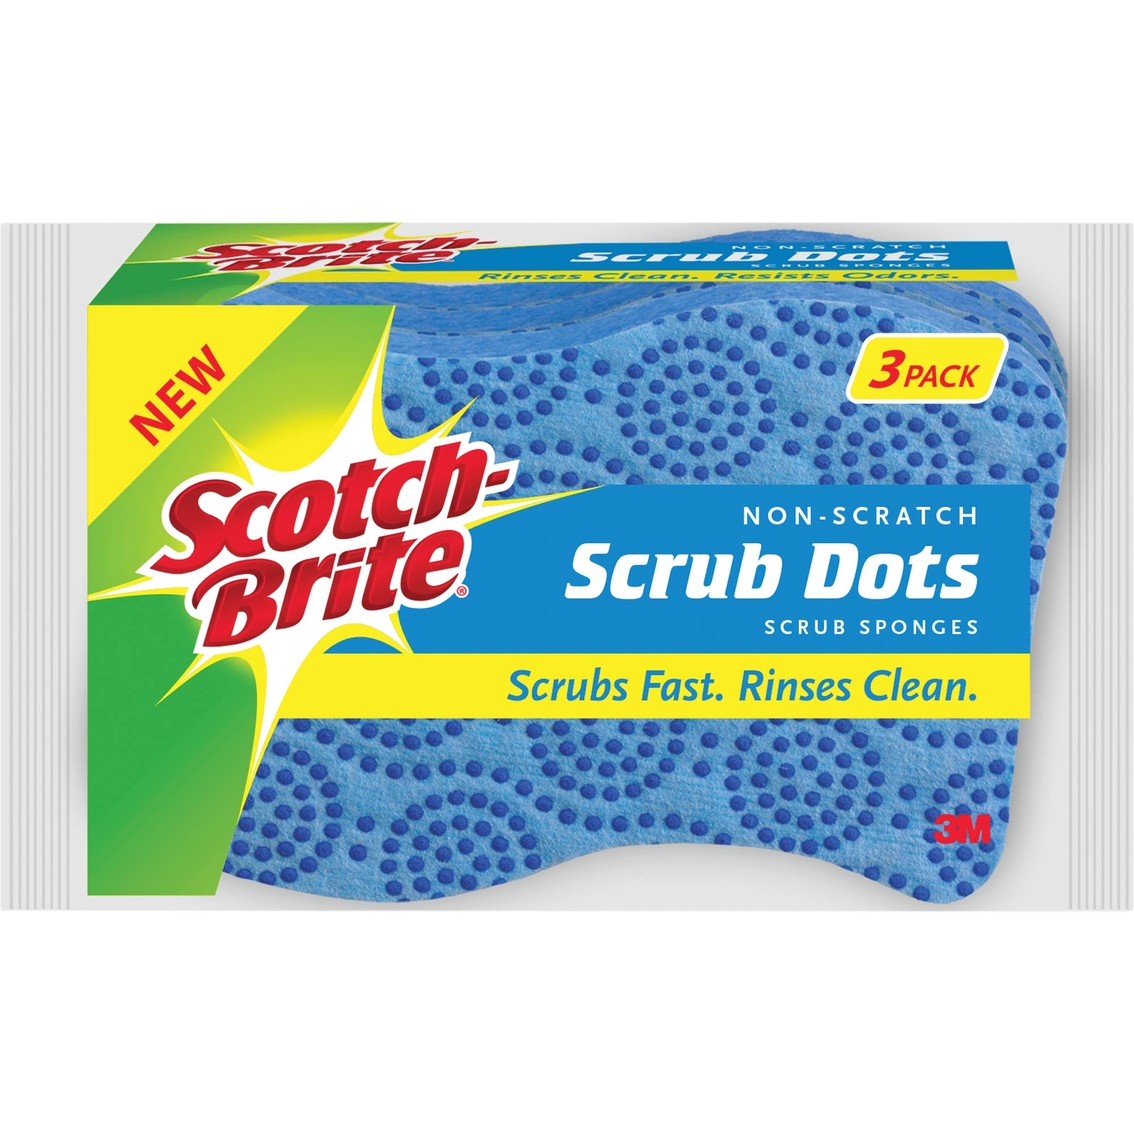 3 Scrub Sponges Scotch-Brite Scrub Dots Non-Scratch Scrub Sponge